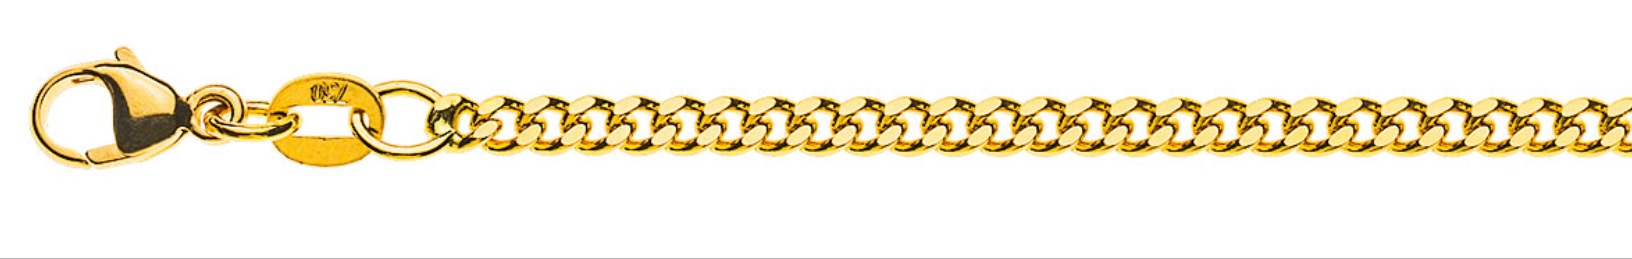 AURONOS Prestige Halskette Gelbgold 18K Panzerkette geschliffen 55cm 2.6mm